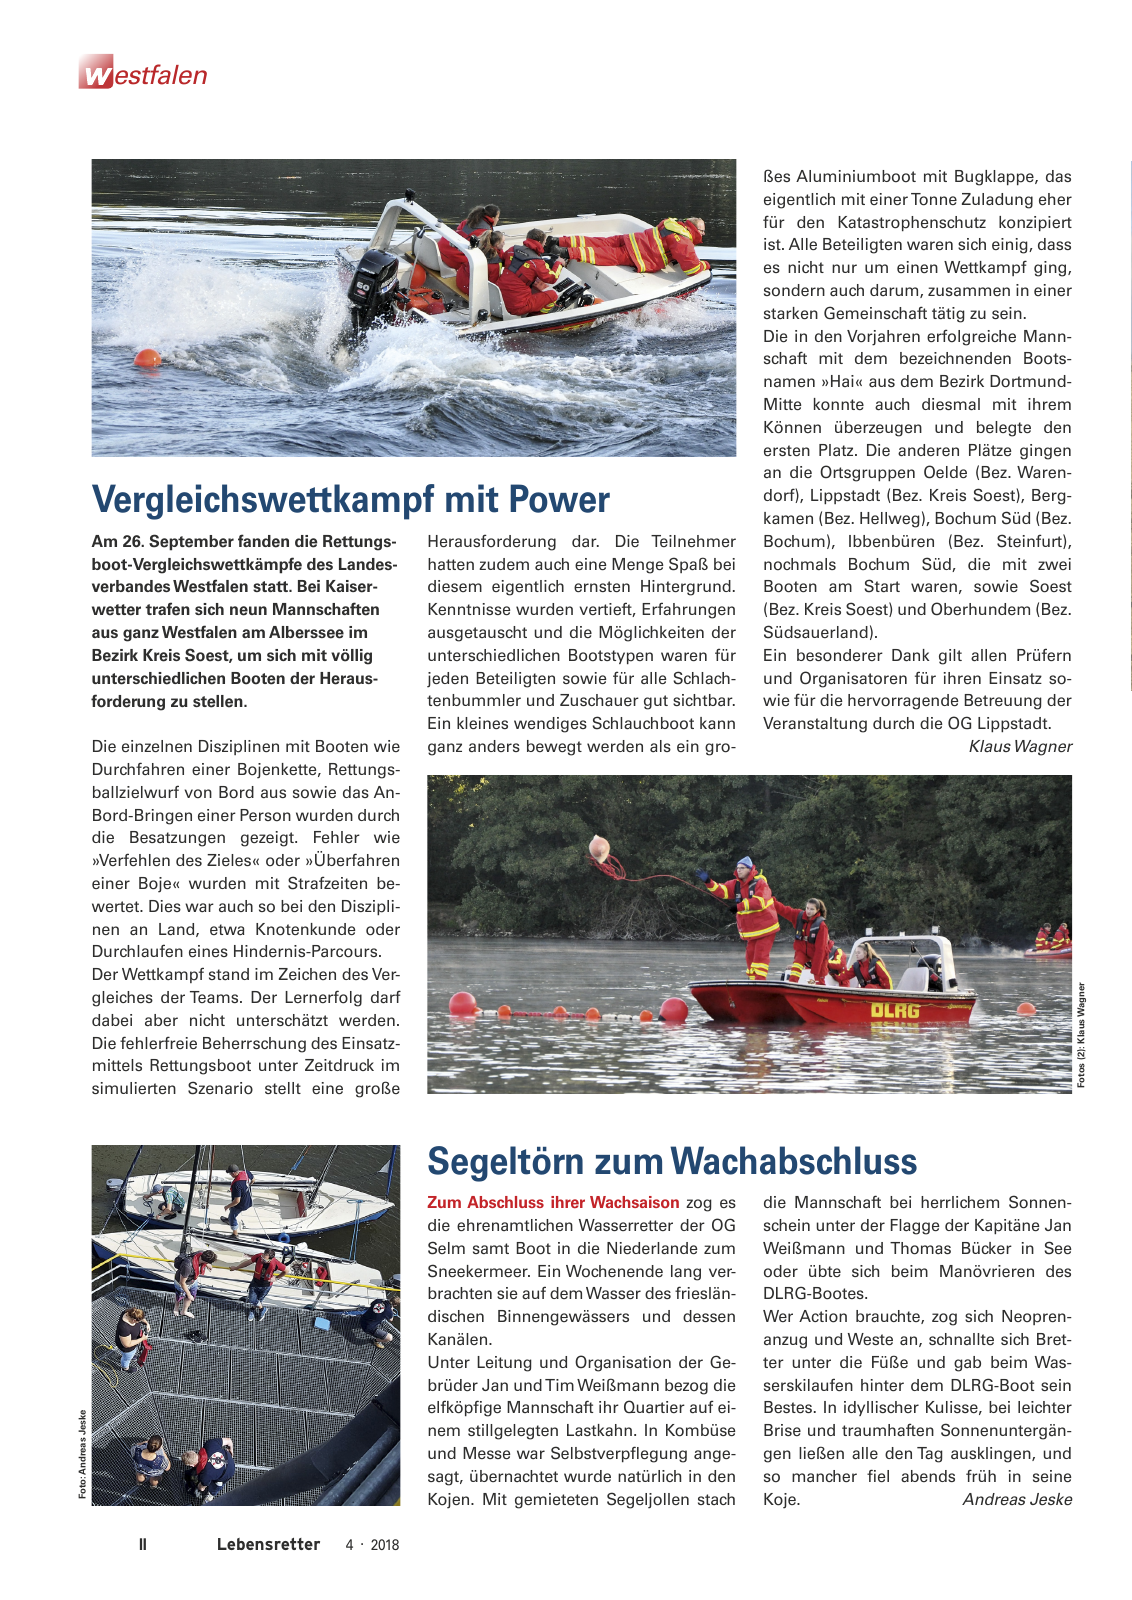 Vorschau Lebensretter 4/2018 - Regionalausgabe Westfalen Seite 4